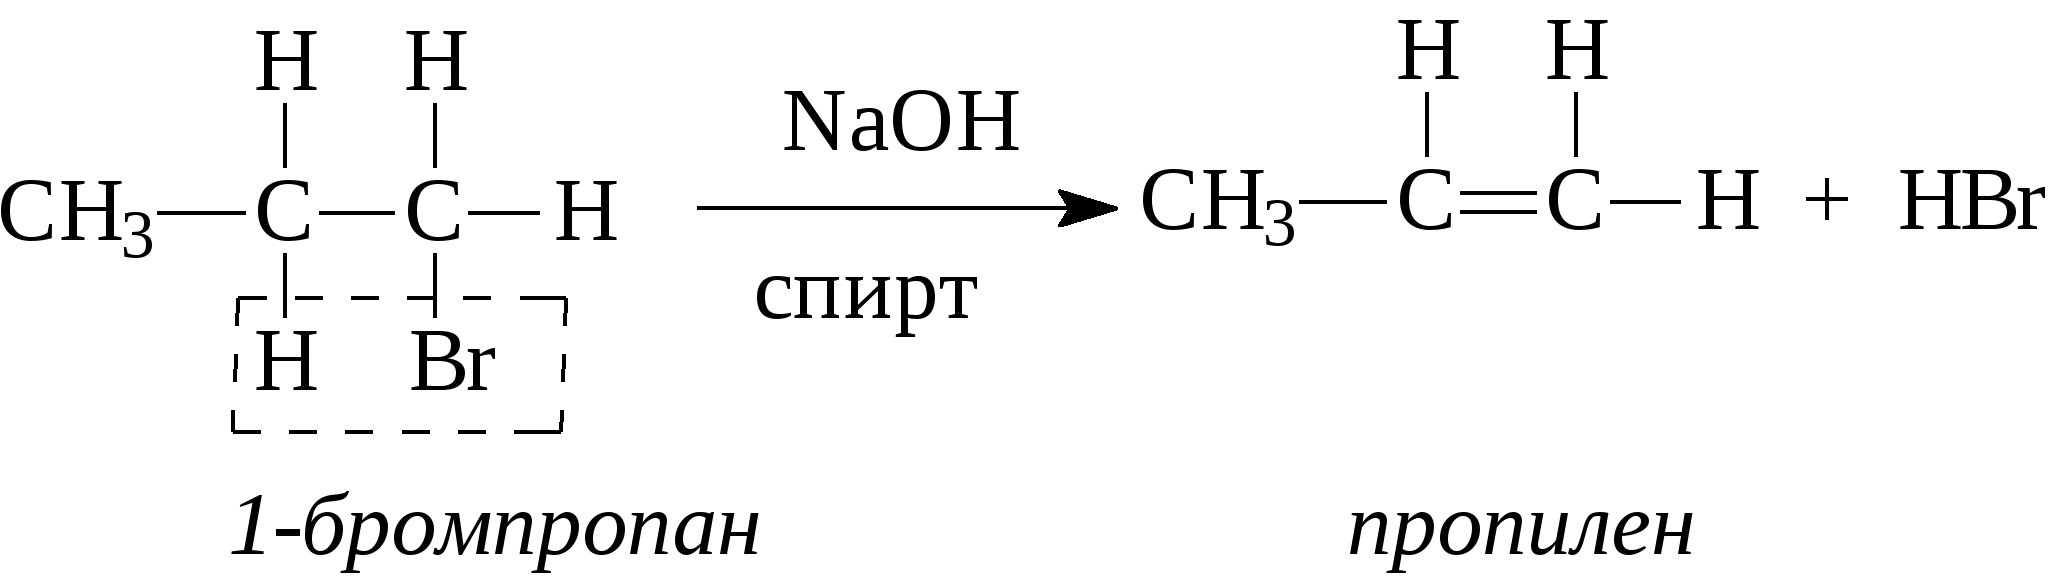 Бромпропан NAOH спиртовой. Получение этилена из этанола. Получение этилена из этилового спирта. Из этилена в этанол. 3 этилена с бромом